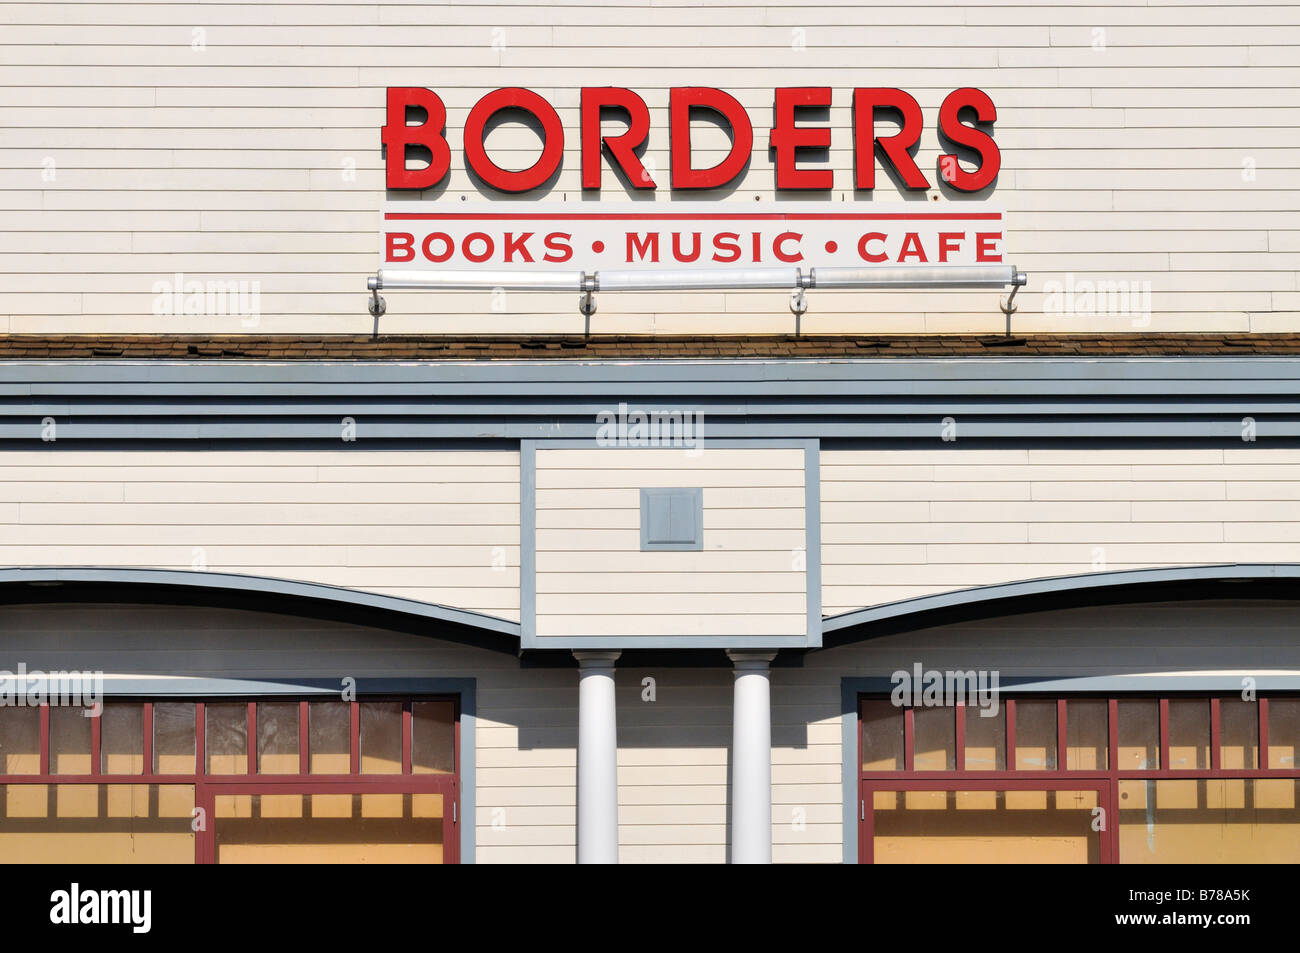 Librería Borders signo exterior de libros música cafe Foto de stock